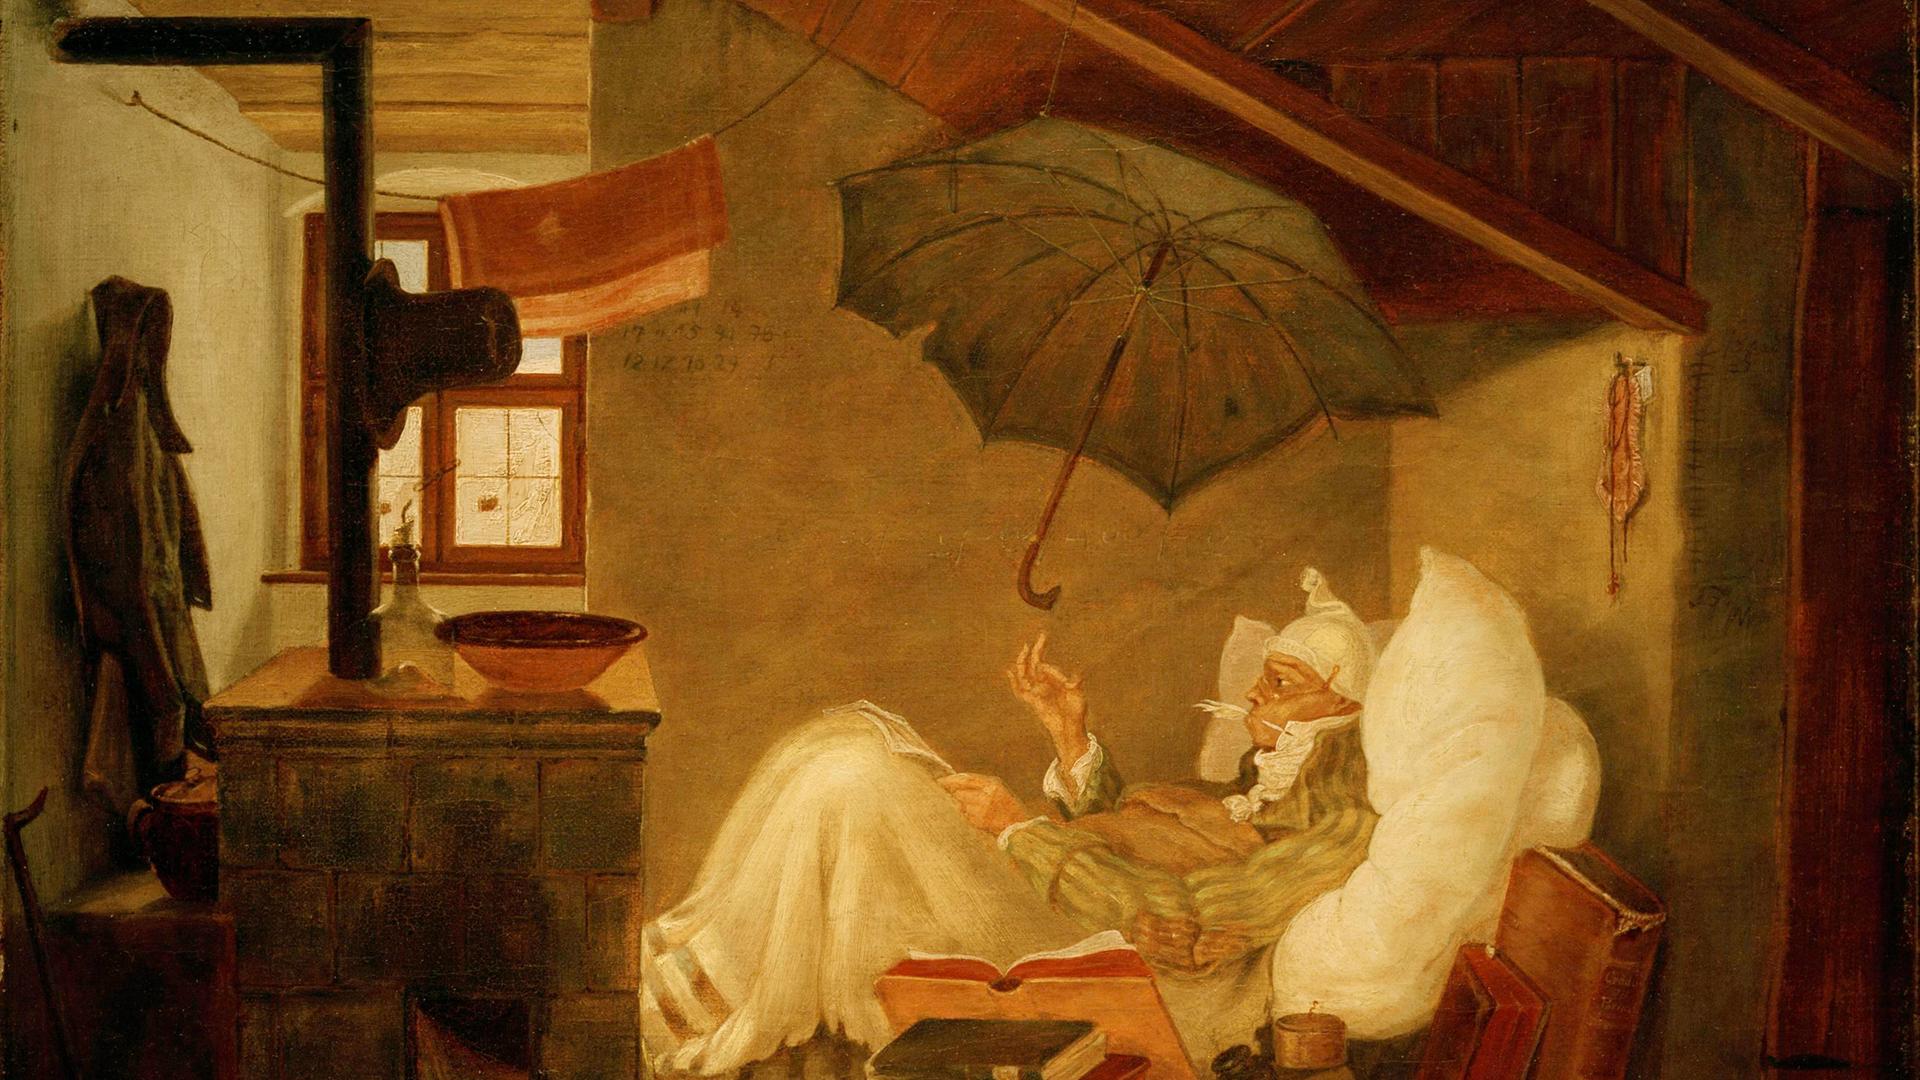 Bild des Künstlers Carl Spitzweg "Der arme Poet", 1837: Ein Mann liegt in einer ärmlichen Dachkammer im Bett mit einem darüber aufgespannten schwarzen Regenschirm. Um das Bett stapeln sich Bücher. 